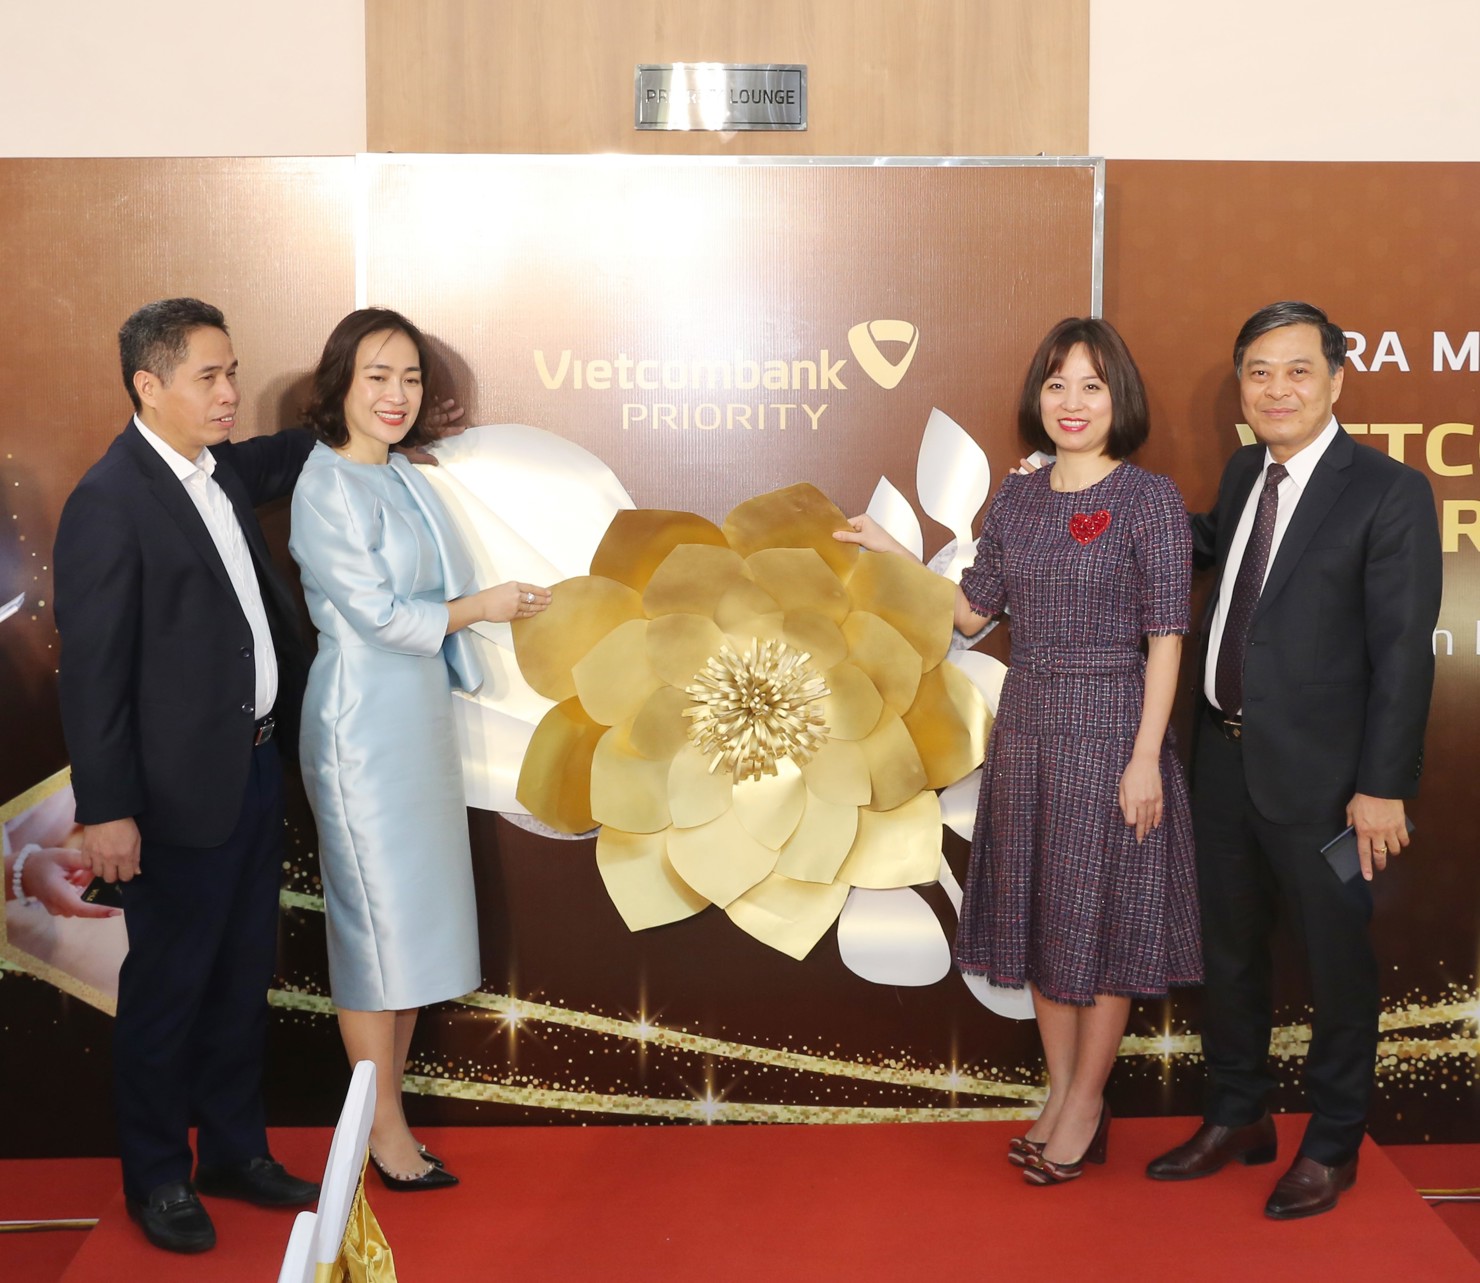 Đại diện lãnh đạo thành phố Bắc Ninh, NHNN tỉnh Bắc Ninh, Ban lãnh đạo Vietcombank và lãnh đạo chi nhánh Vietcombank Bắc Ninh thực hiện nghi thức khai trương Priority Lounge